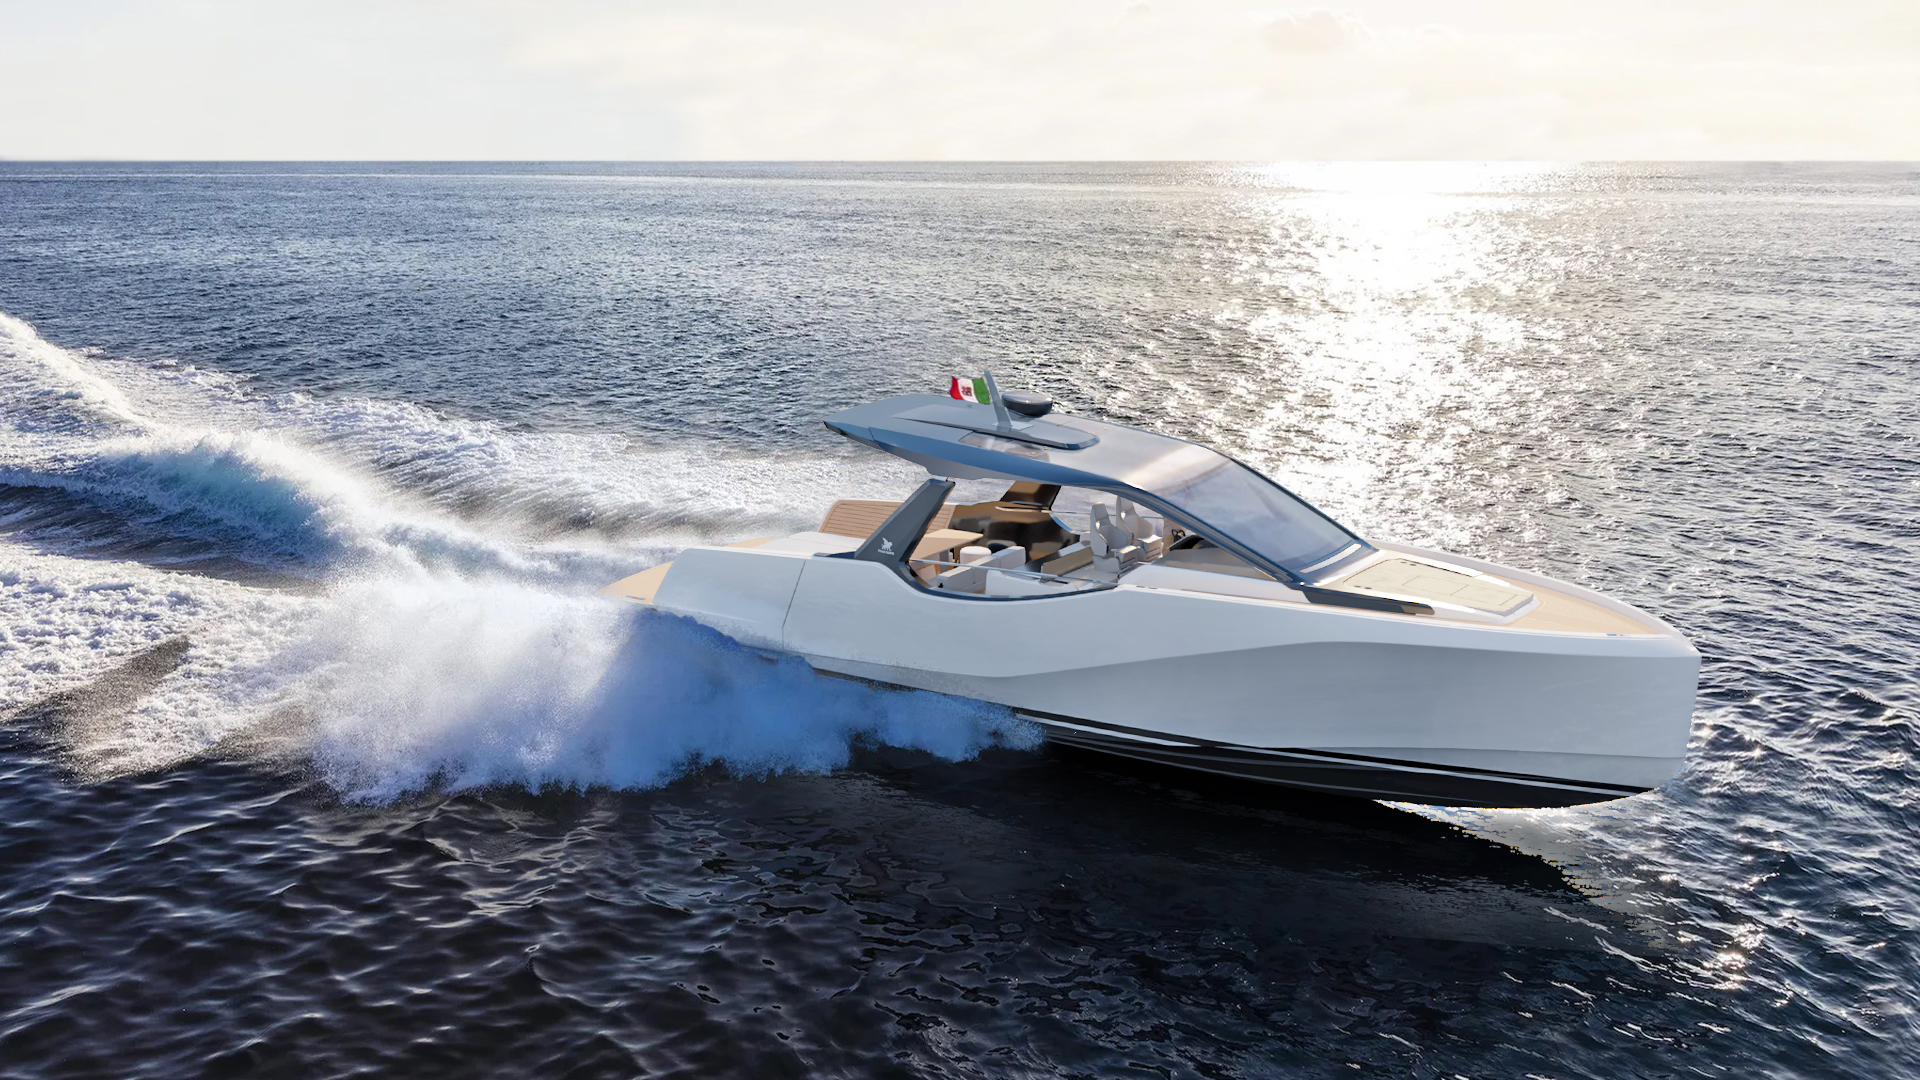 Italia Yachts Announces New Models at Fall Boat Shows | David Walters ...